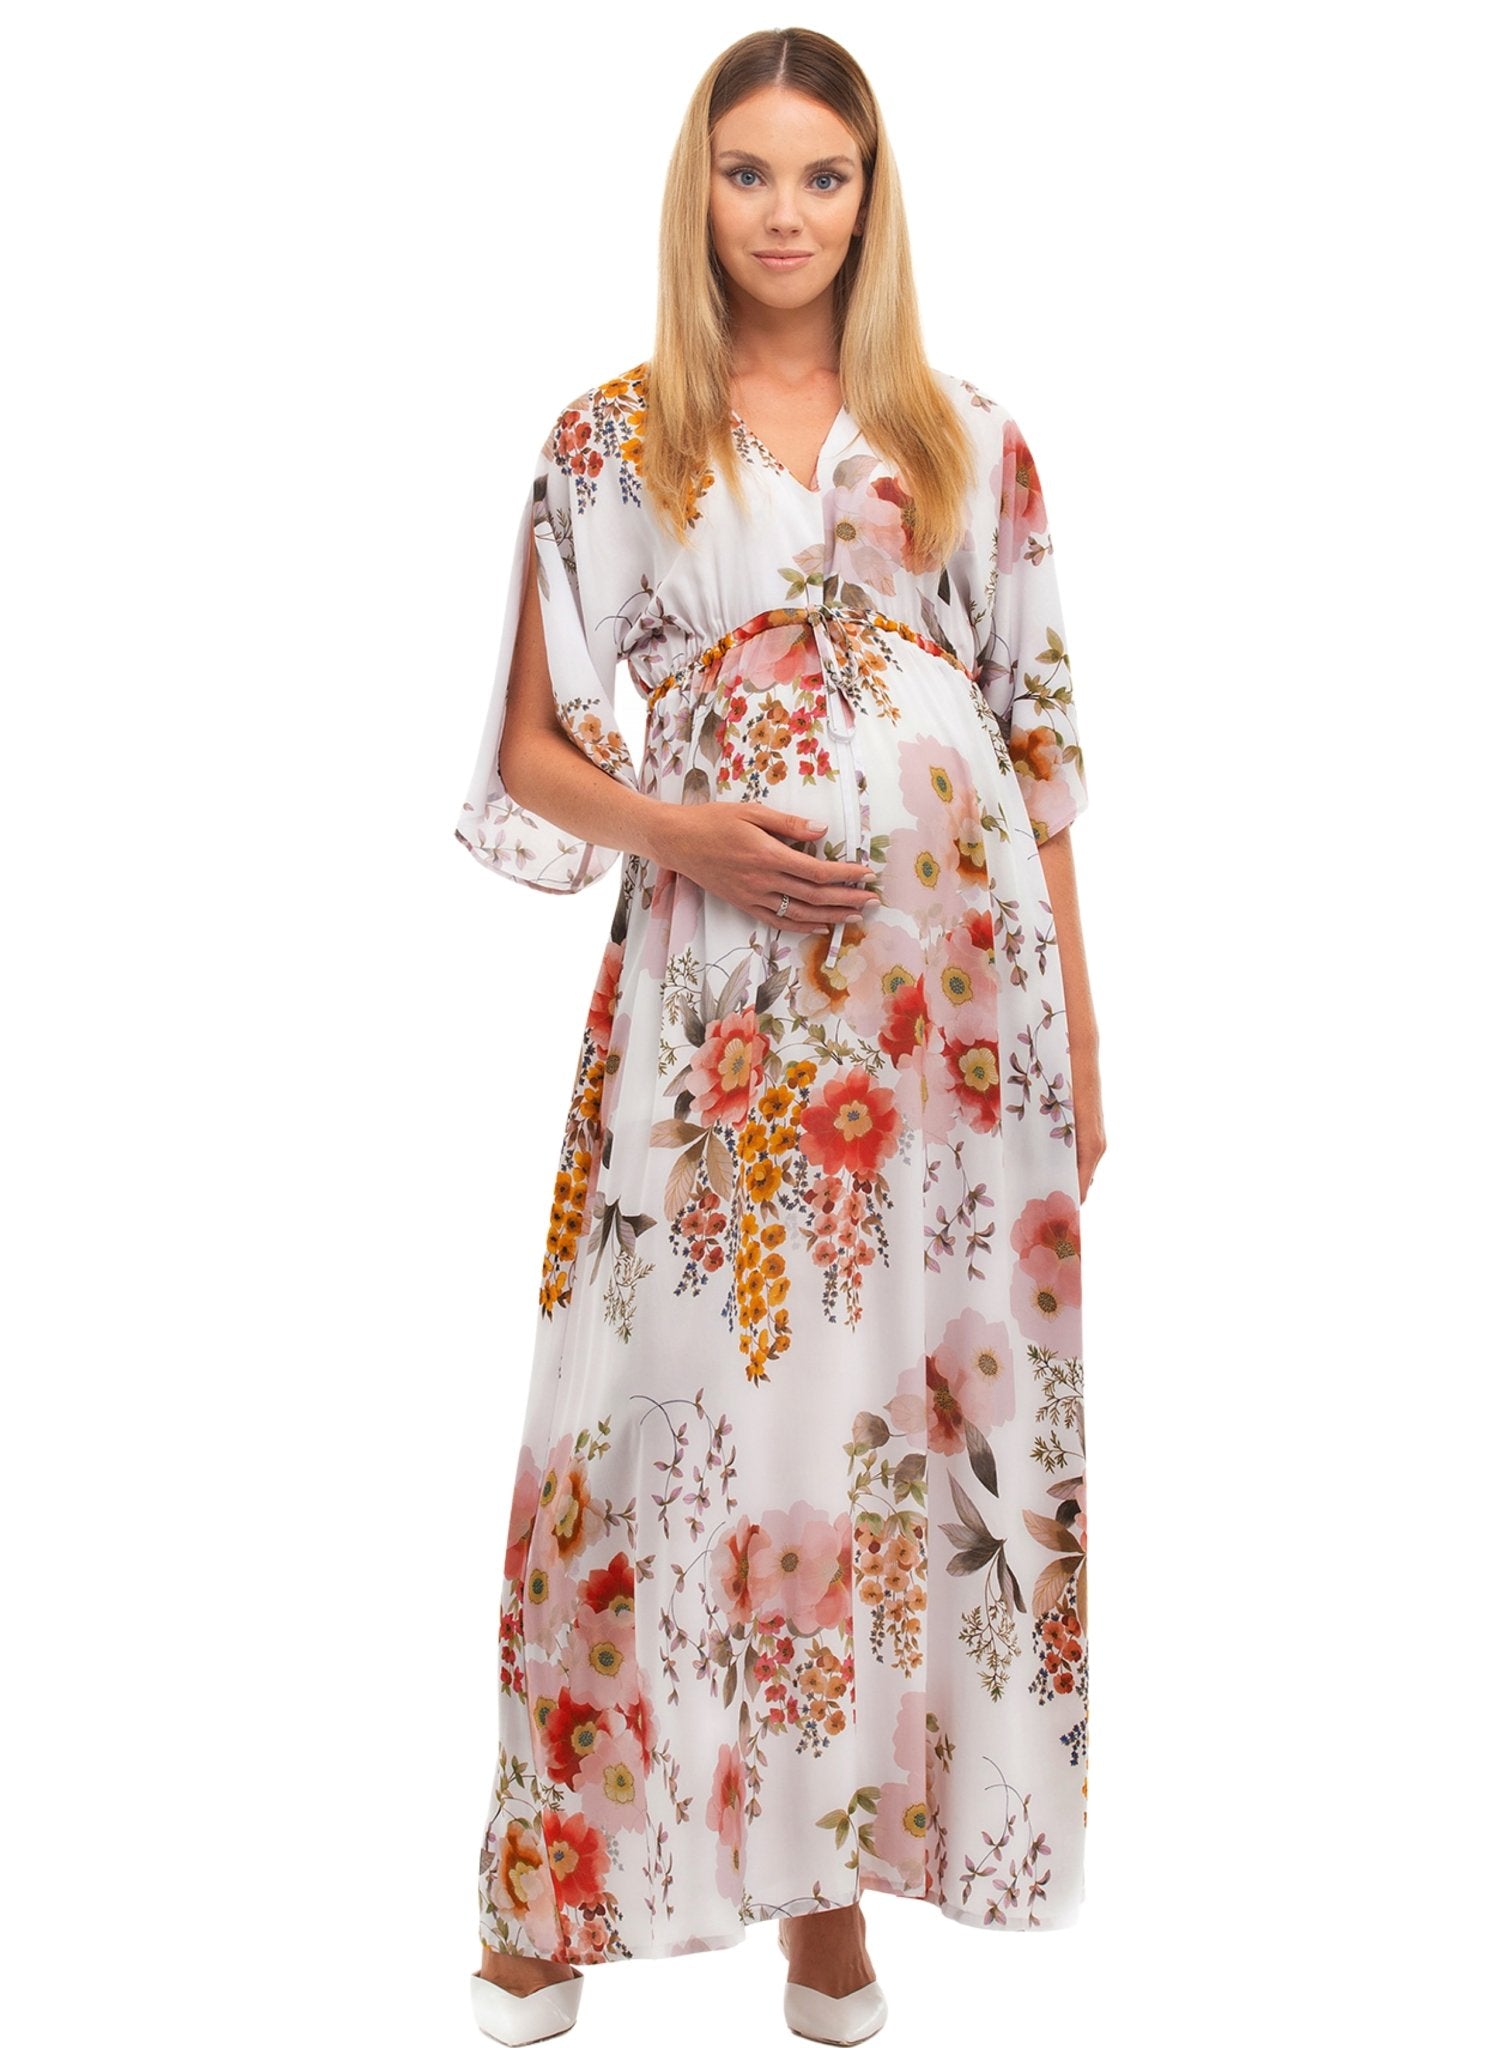 Verbena Maternity Dress - Camellia - Mums and Bumps